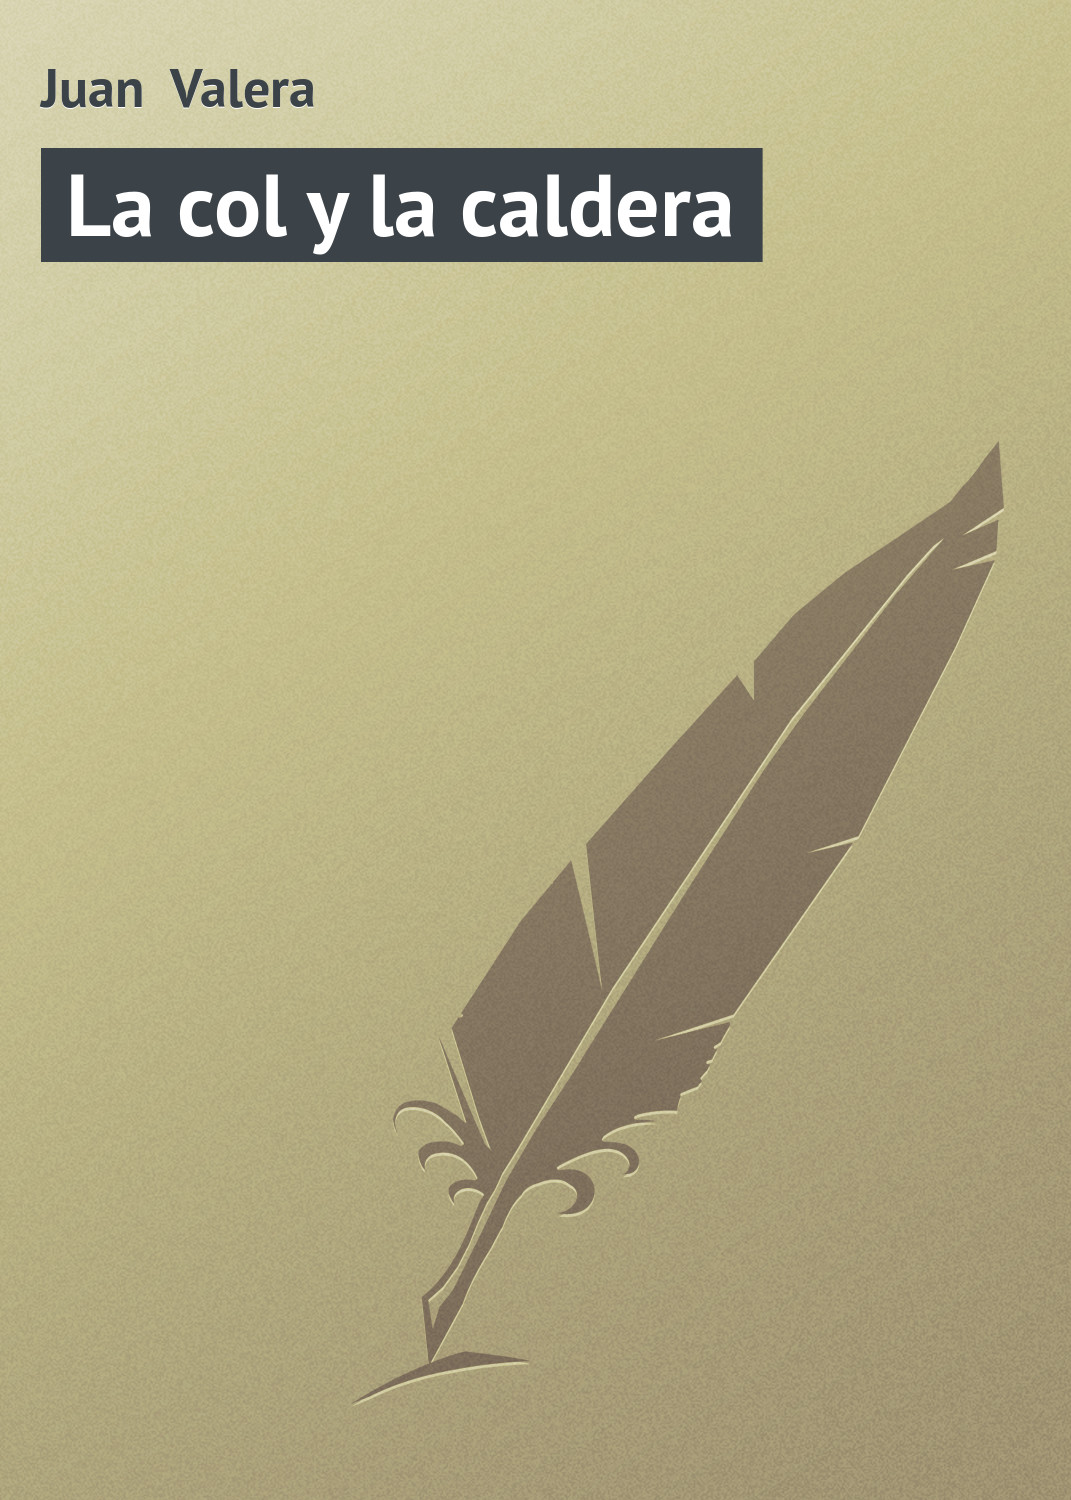 Книга La col y la caldera из серии , созданная Juan Valera, может относится к жанру Зарубежная старинная литература, Зарубежная классика. Стоимость электронной книги La col y la caldera с идентификатором 21107878 составляет 5.99 руб.